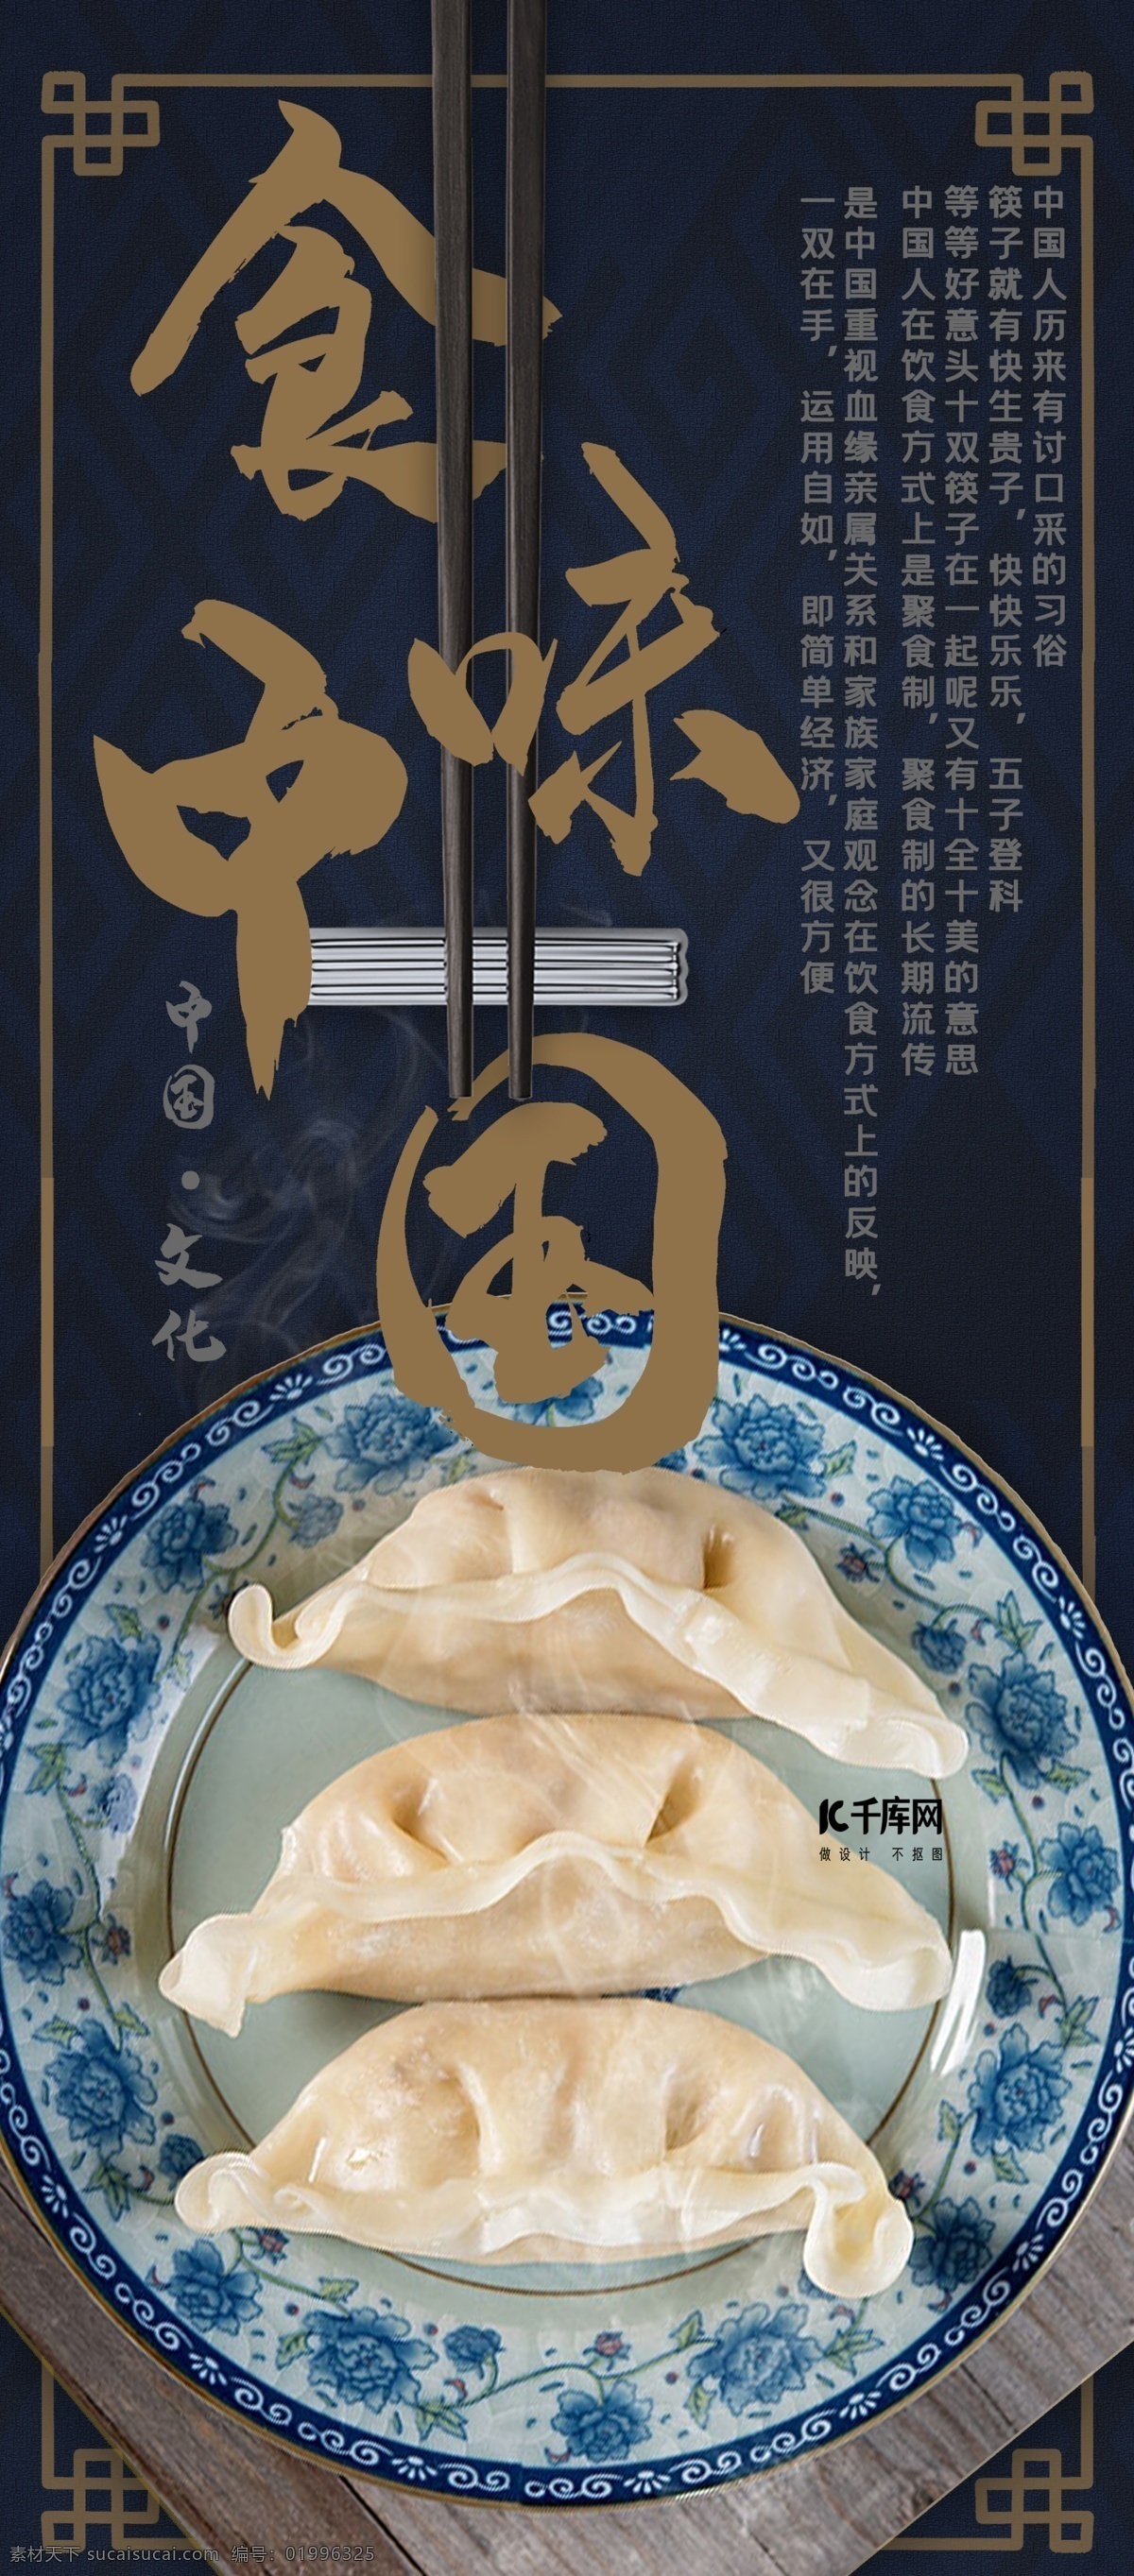 中国 文化 食味 宣传 x 展架 中国文化 食味中国 x展架 易拉宝 筷子